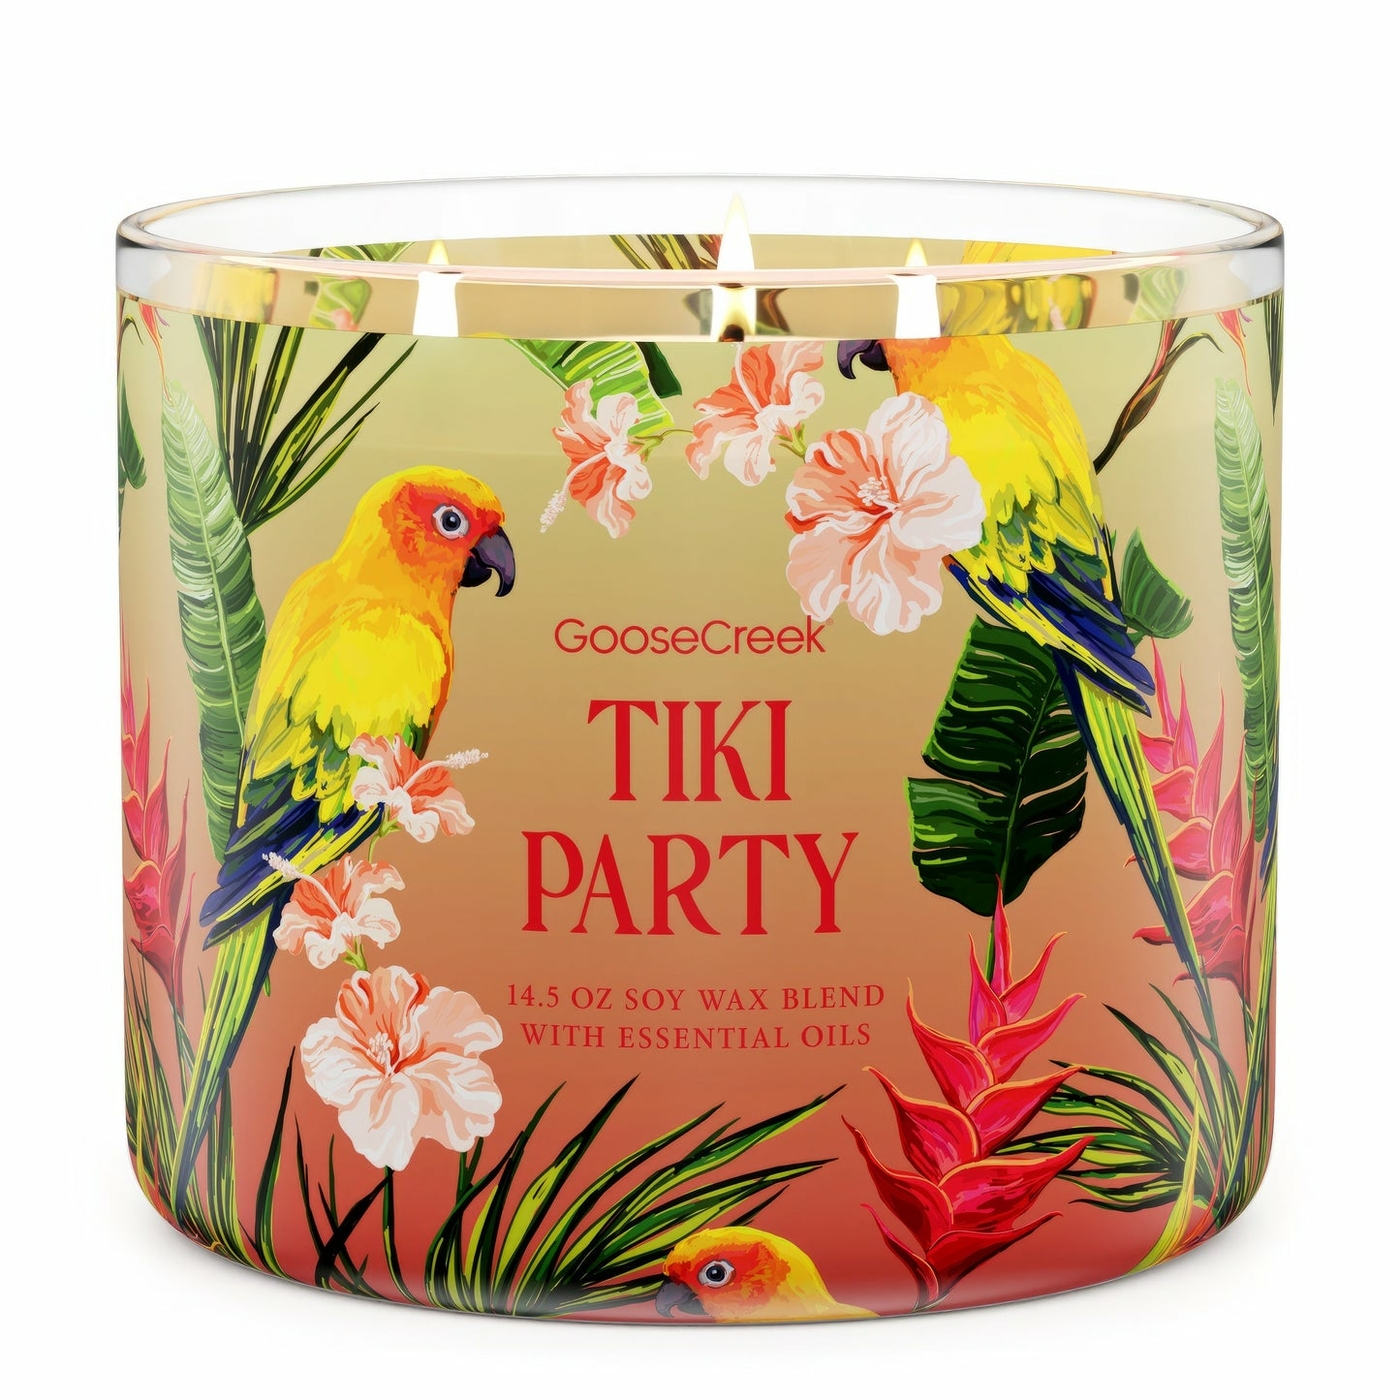 Tiki Party